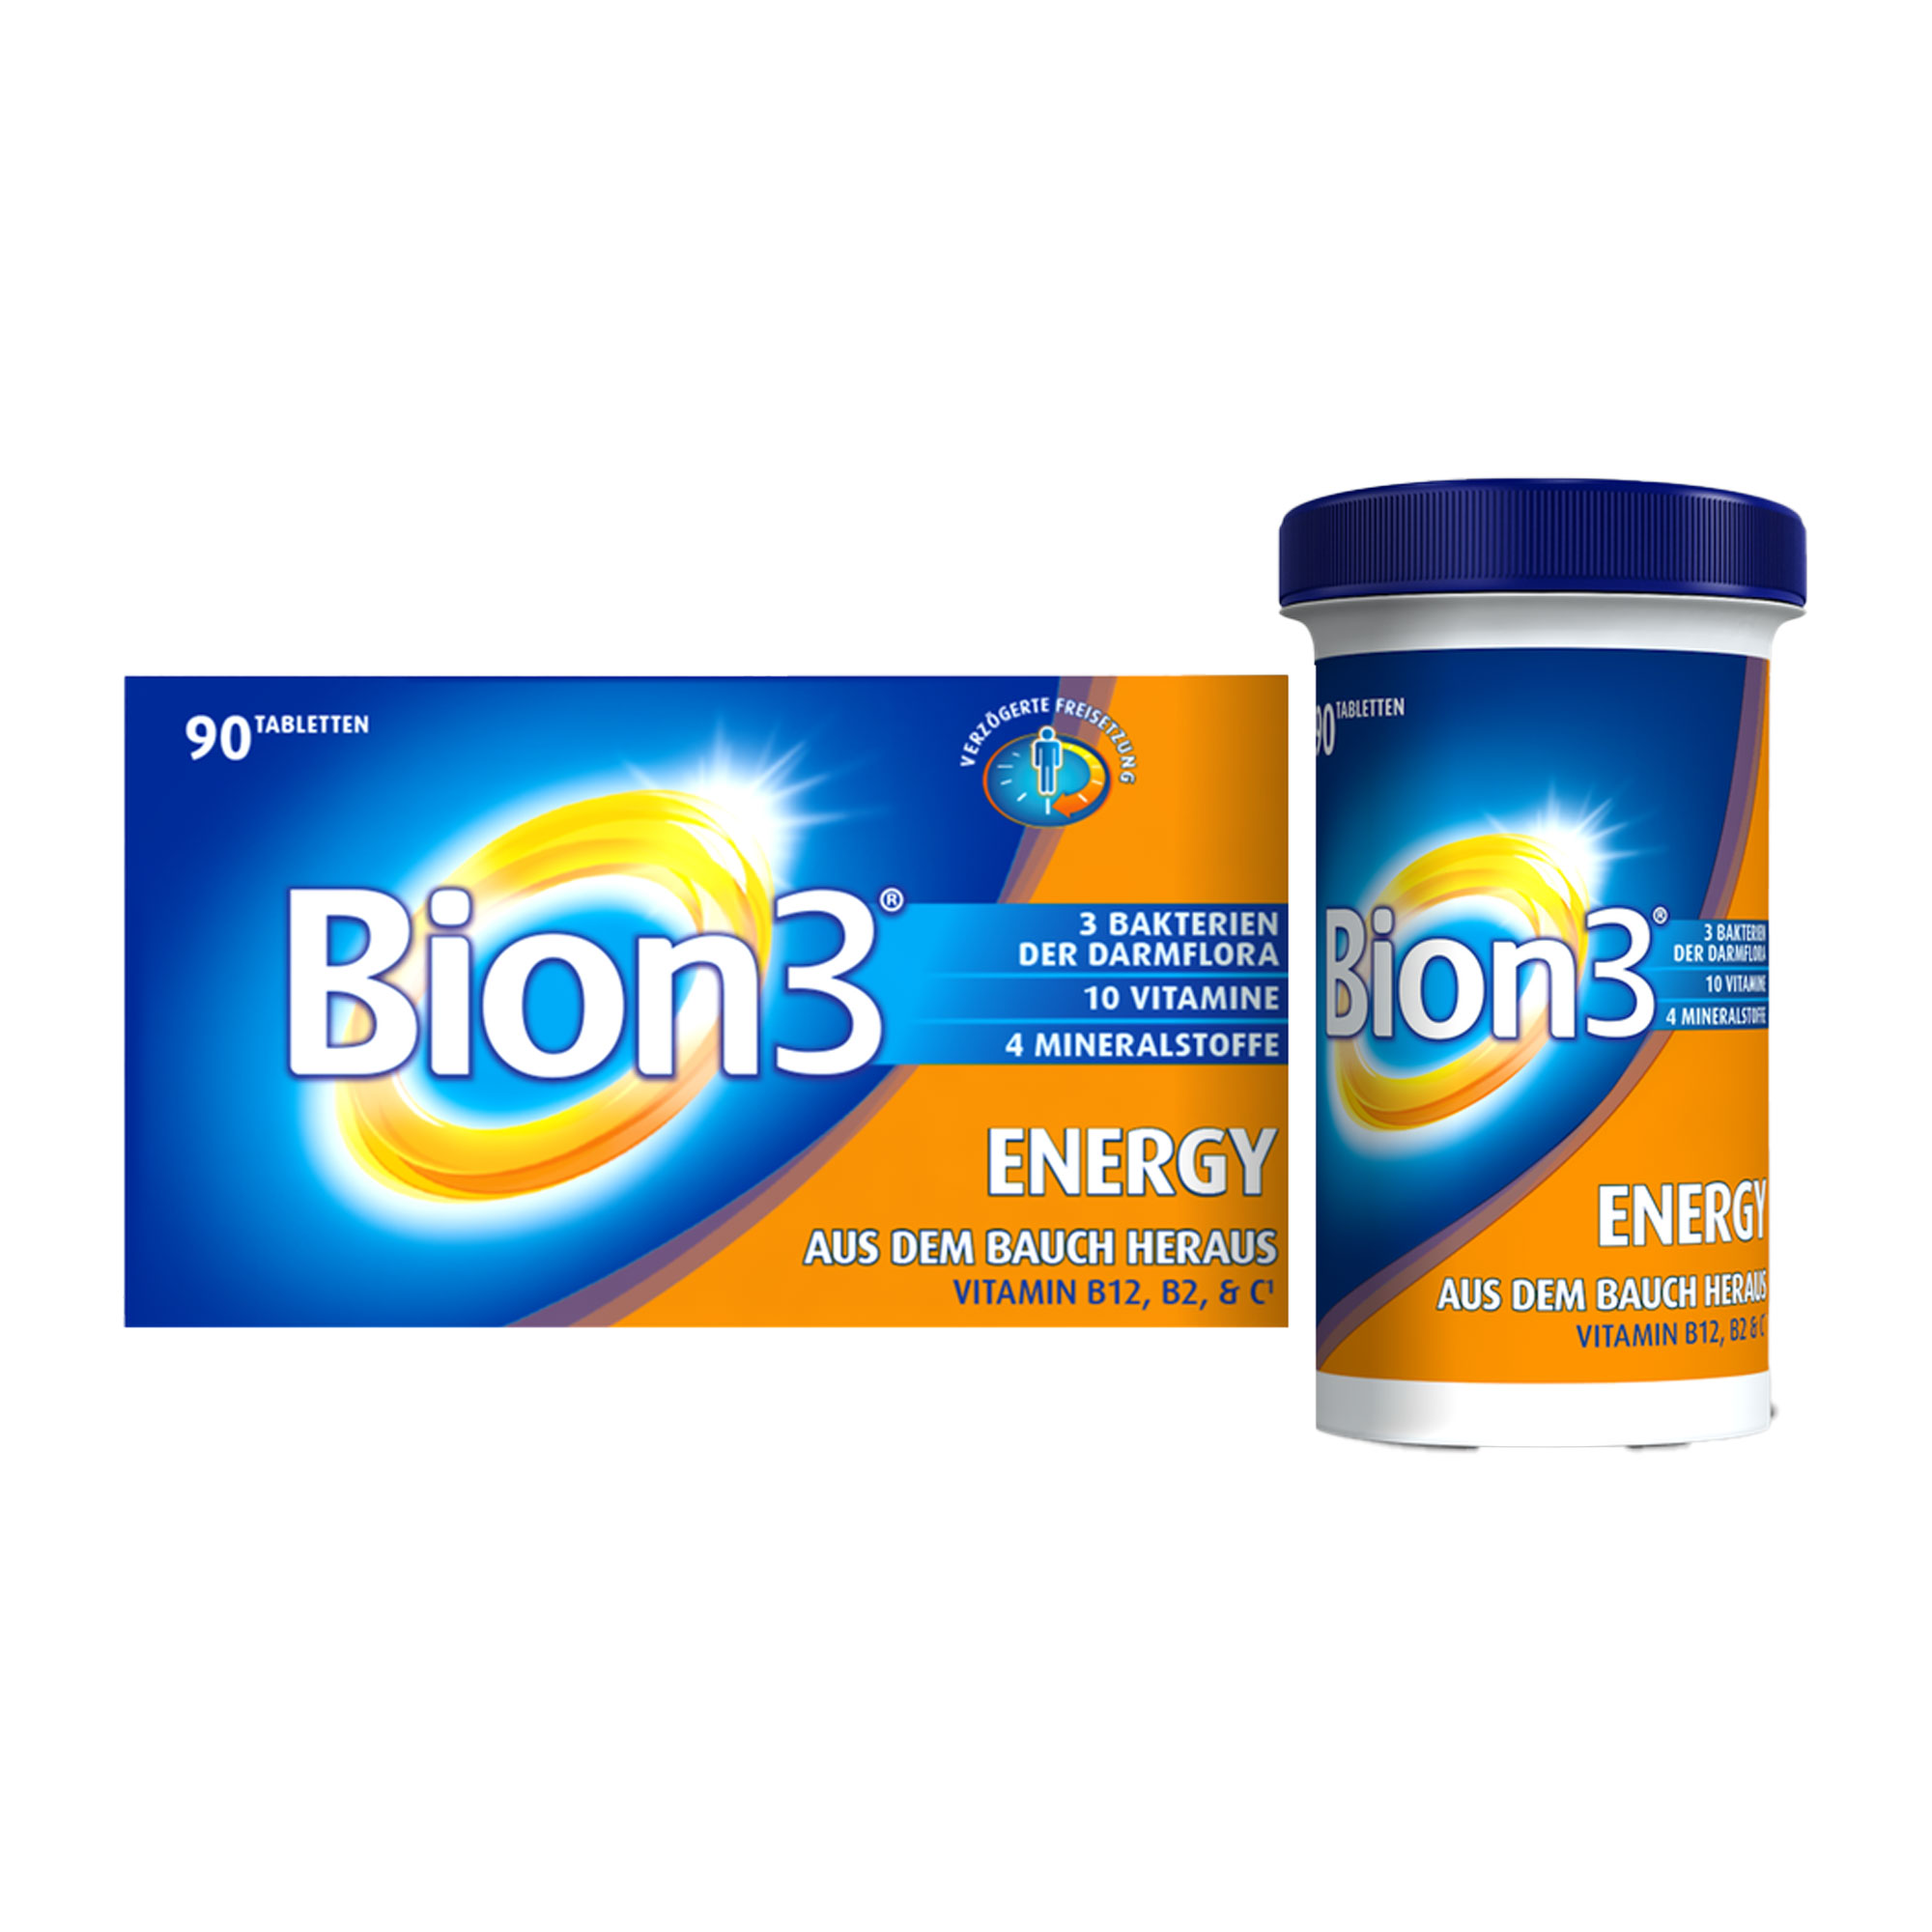 Nahrungsergänzungsmittel mit 3 Tri-Bion Bakterien der Darmflora, Vitaminen, Mineralstoffen und Ginsengextrakt.